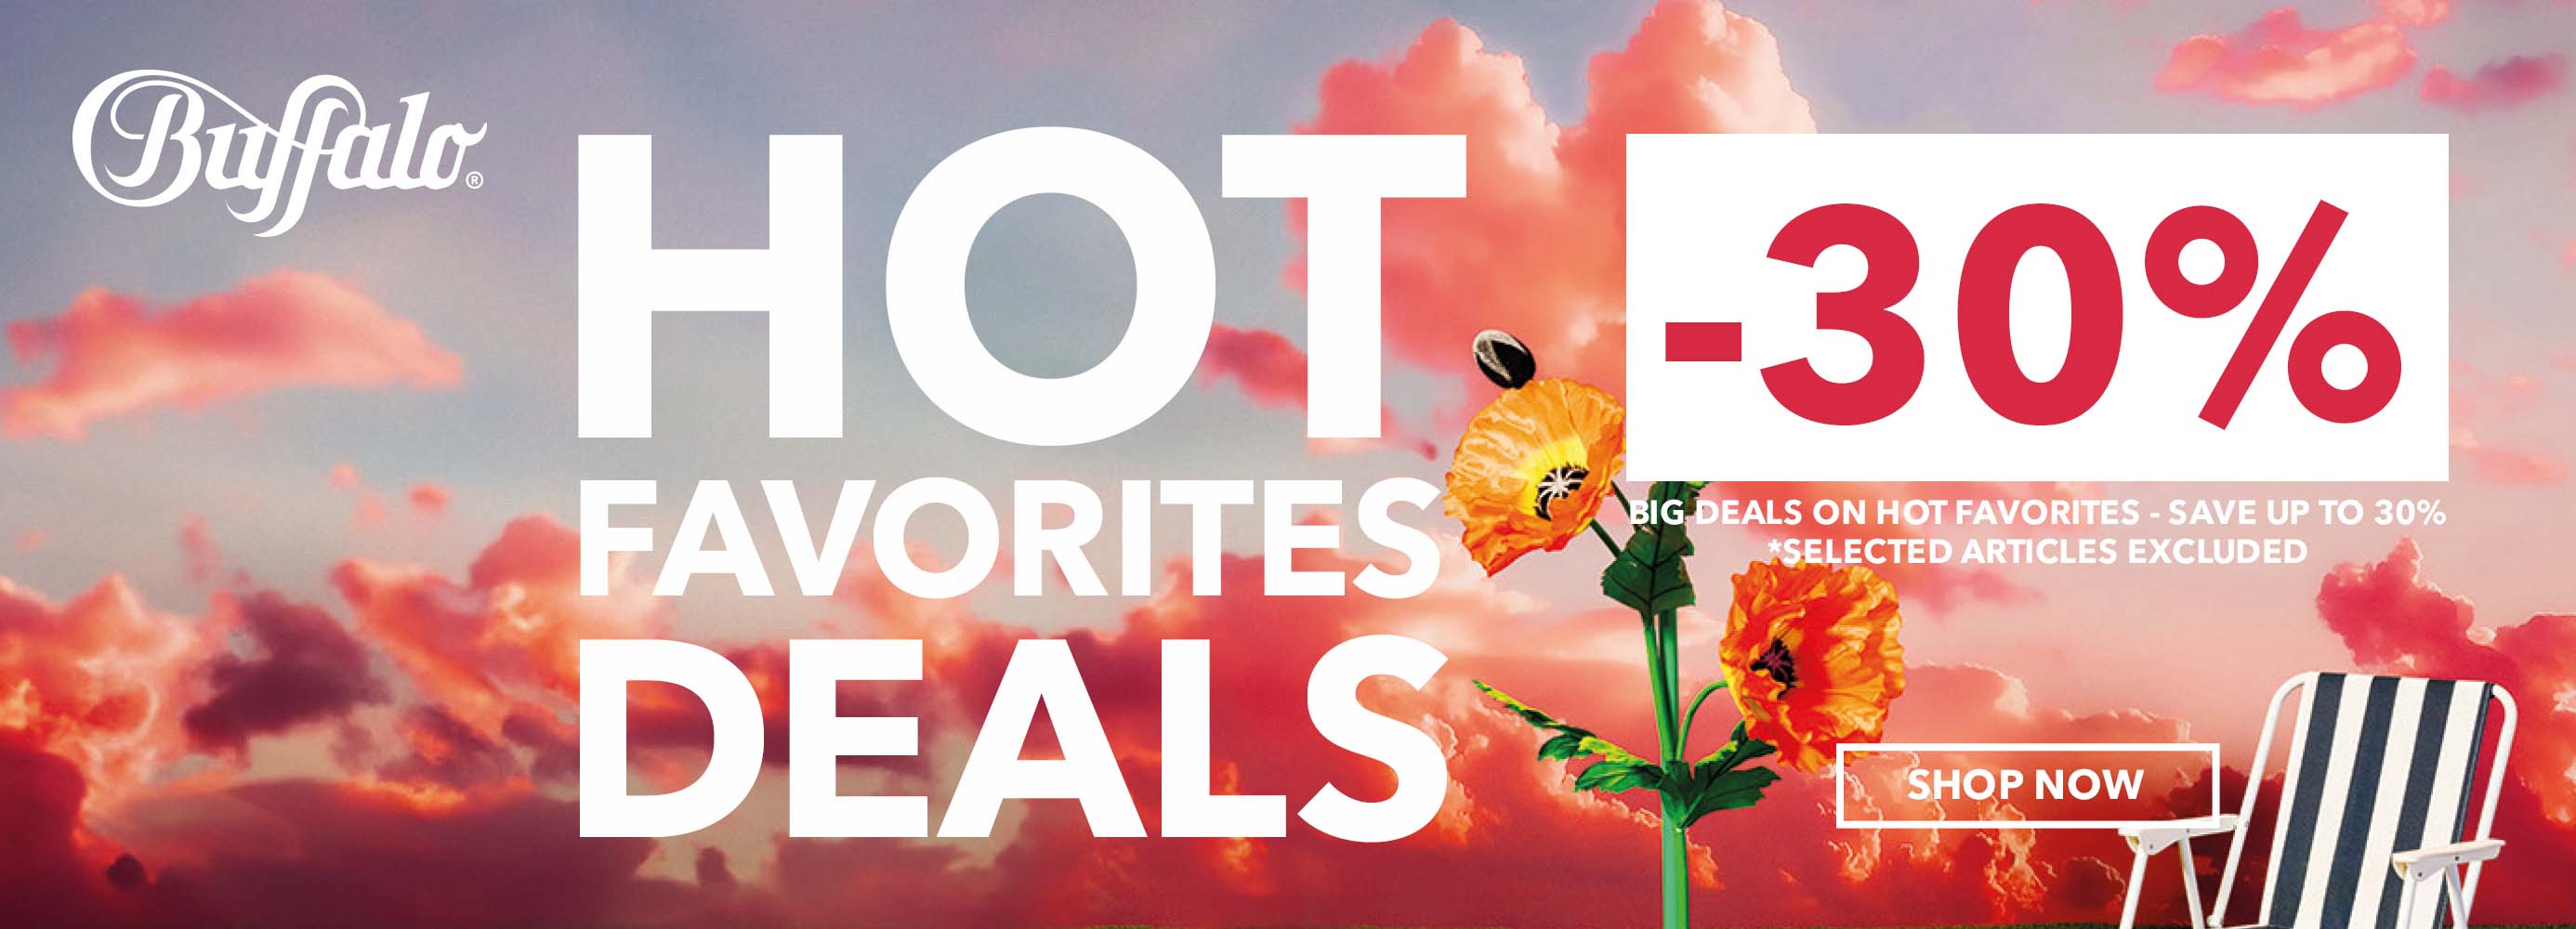 Hot Favorites Deals